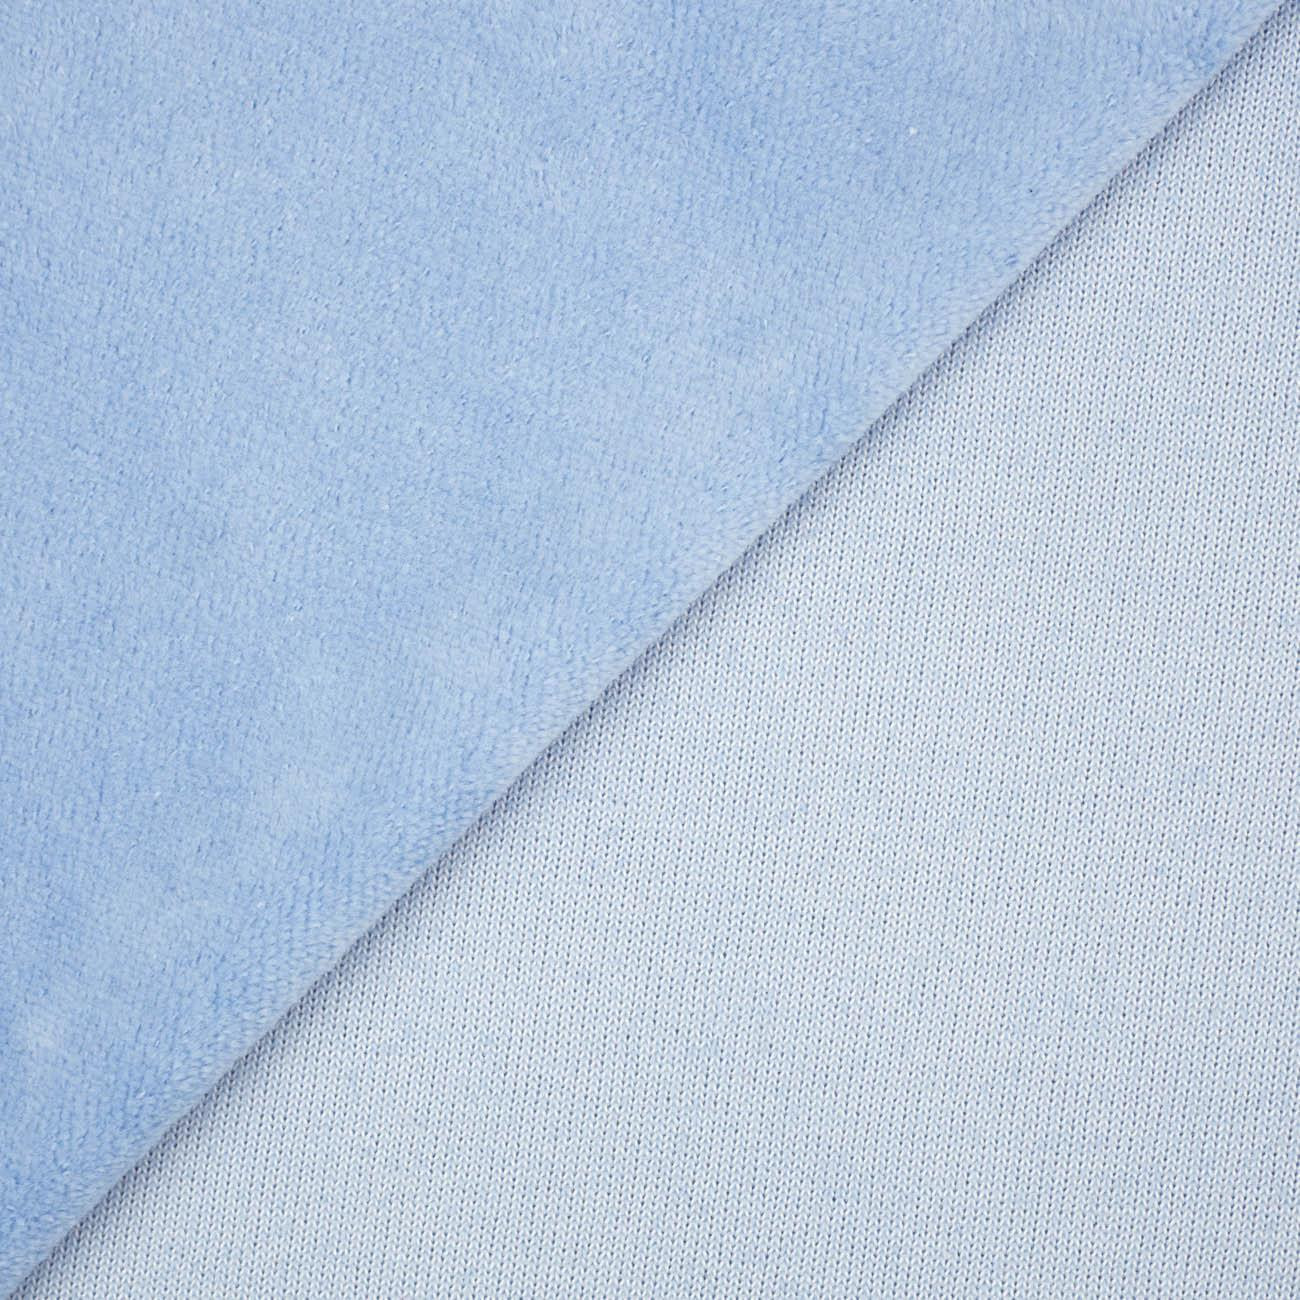 Light blue - cotton velour